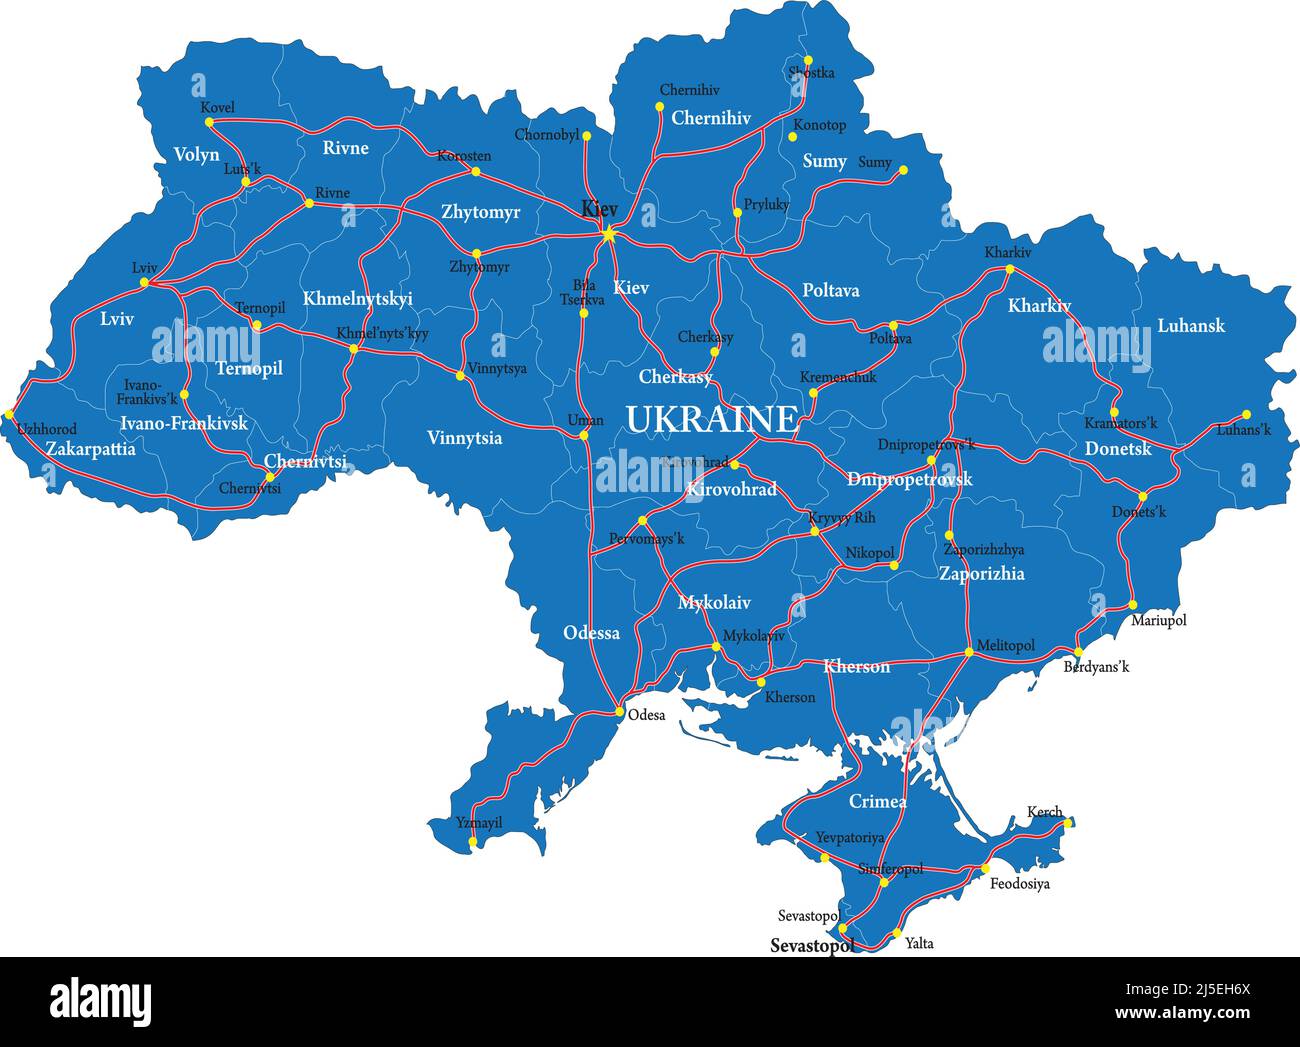 Mappa vettoriale molto dettagliata della Romania con regioni amministrative, principali città e strade. Illustrazione Vettoriale